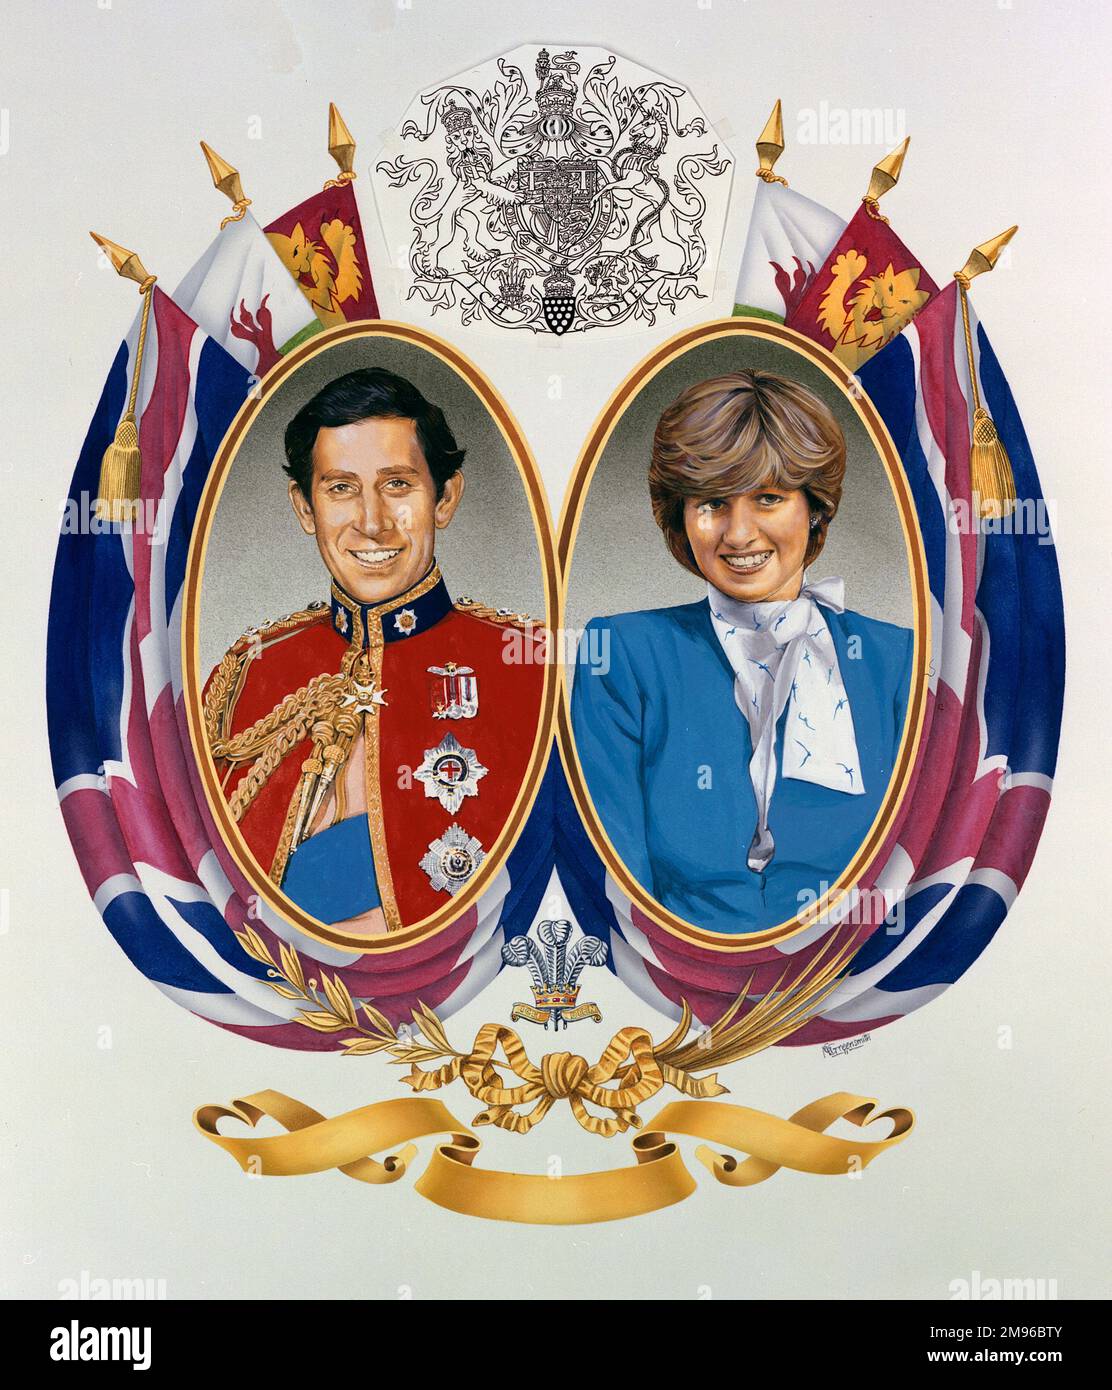 Ein königliches Gemälde von Lady Diana Spencer (1961-1997), Prinzessin von Wales und Prinz Charles (1948-), mit Wappen und Flaggen. Möglicherweise gemalt, um ihre Verlobung zu feiern. Stockfoto